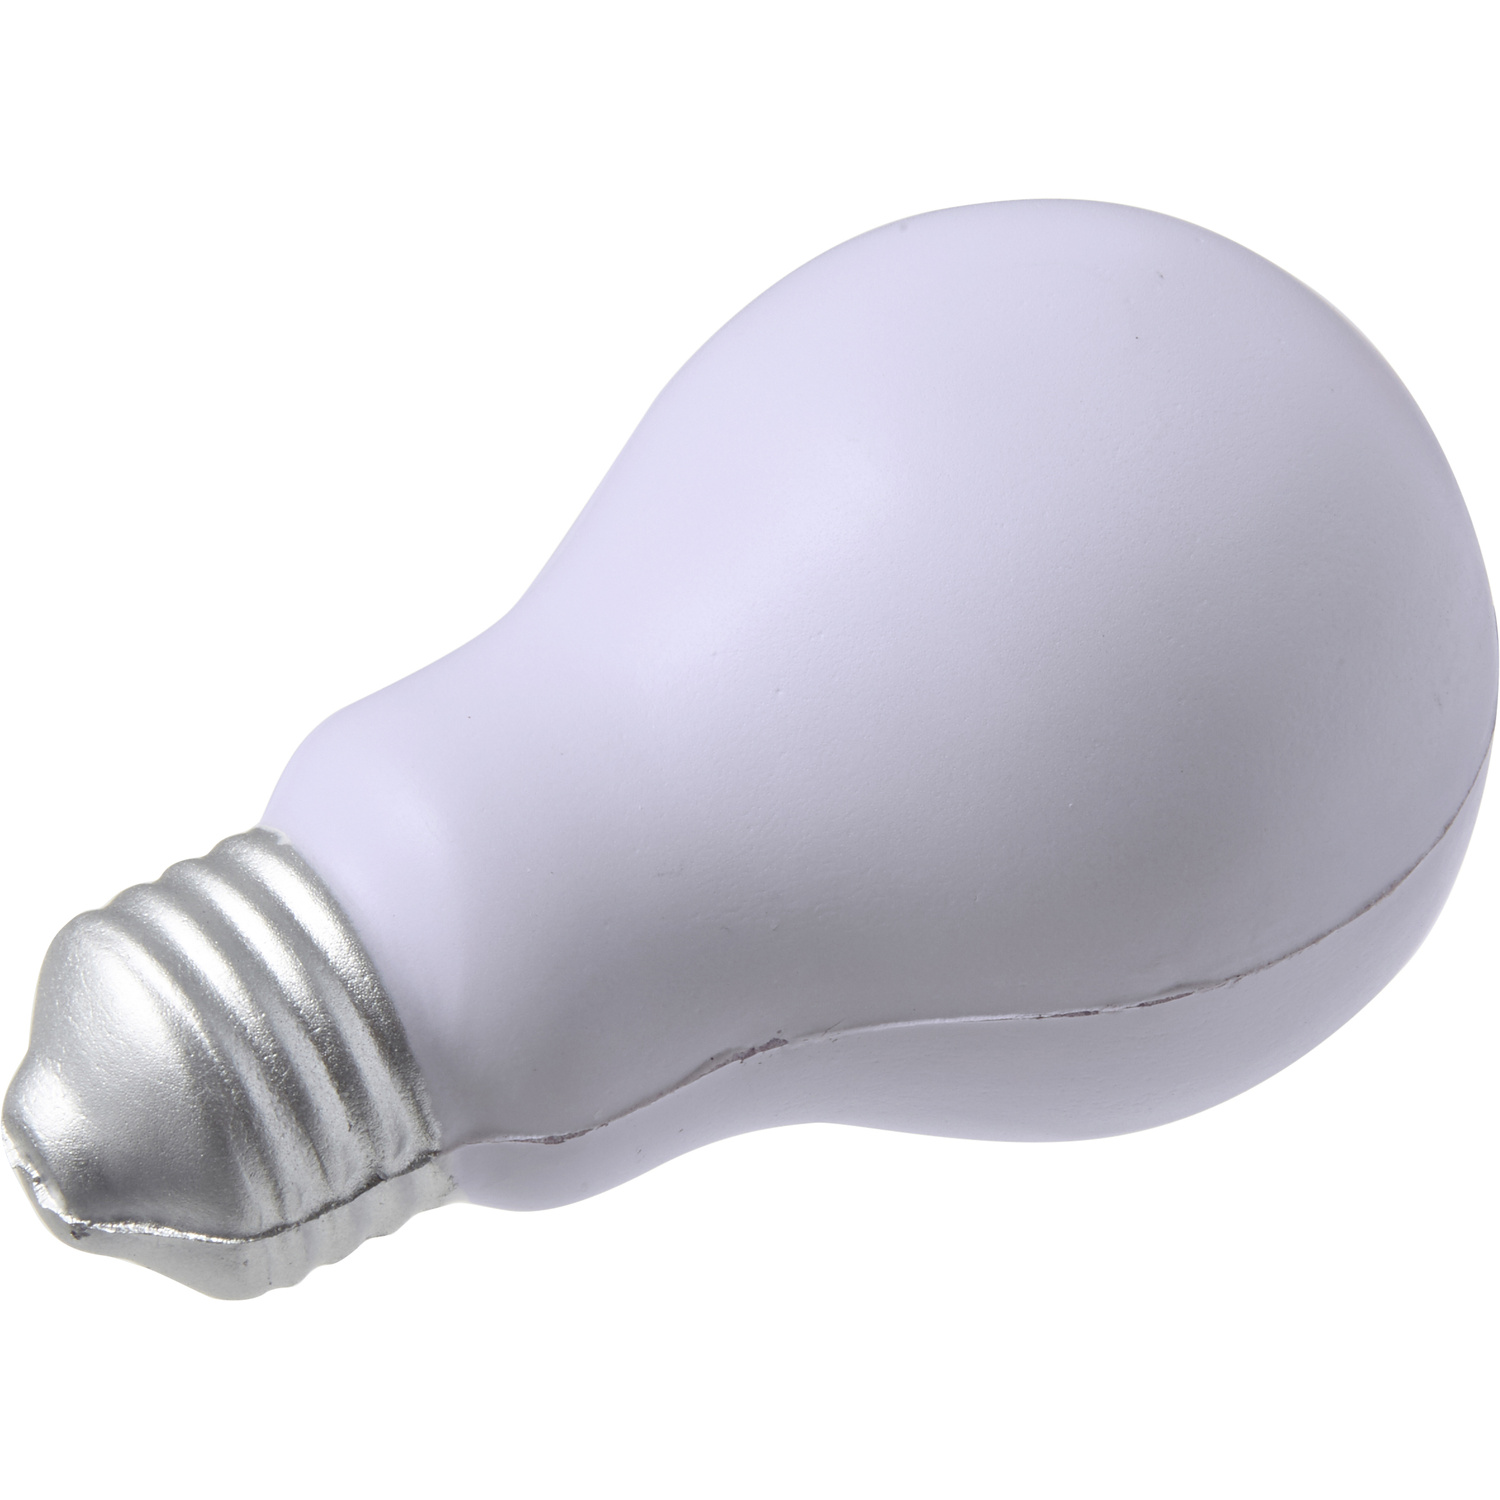 007249 002999999 3d045 rgt pro01 fal - Foam anti stress light bulb